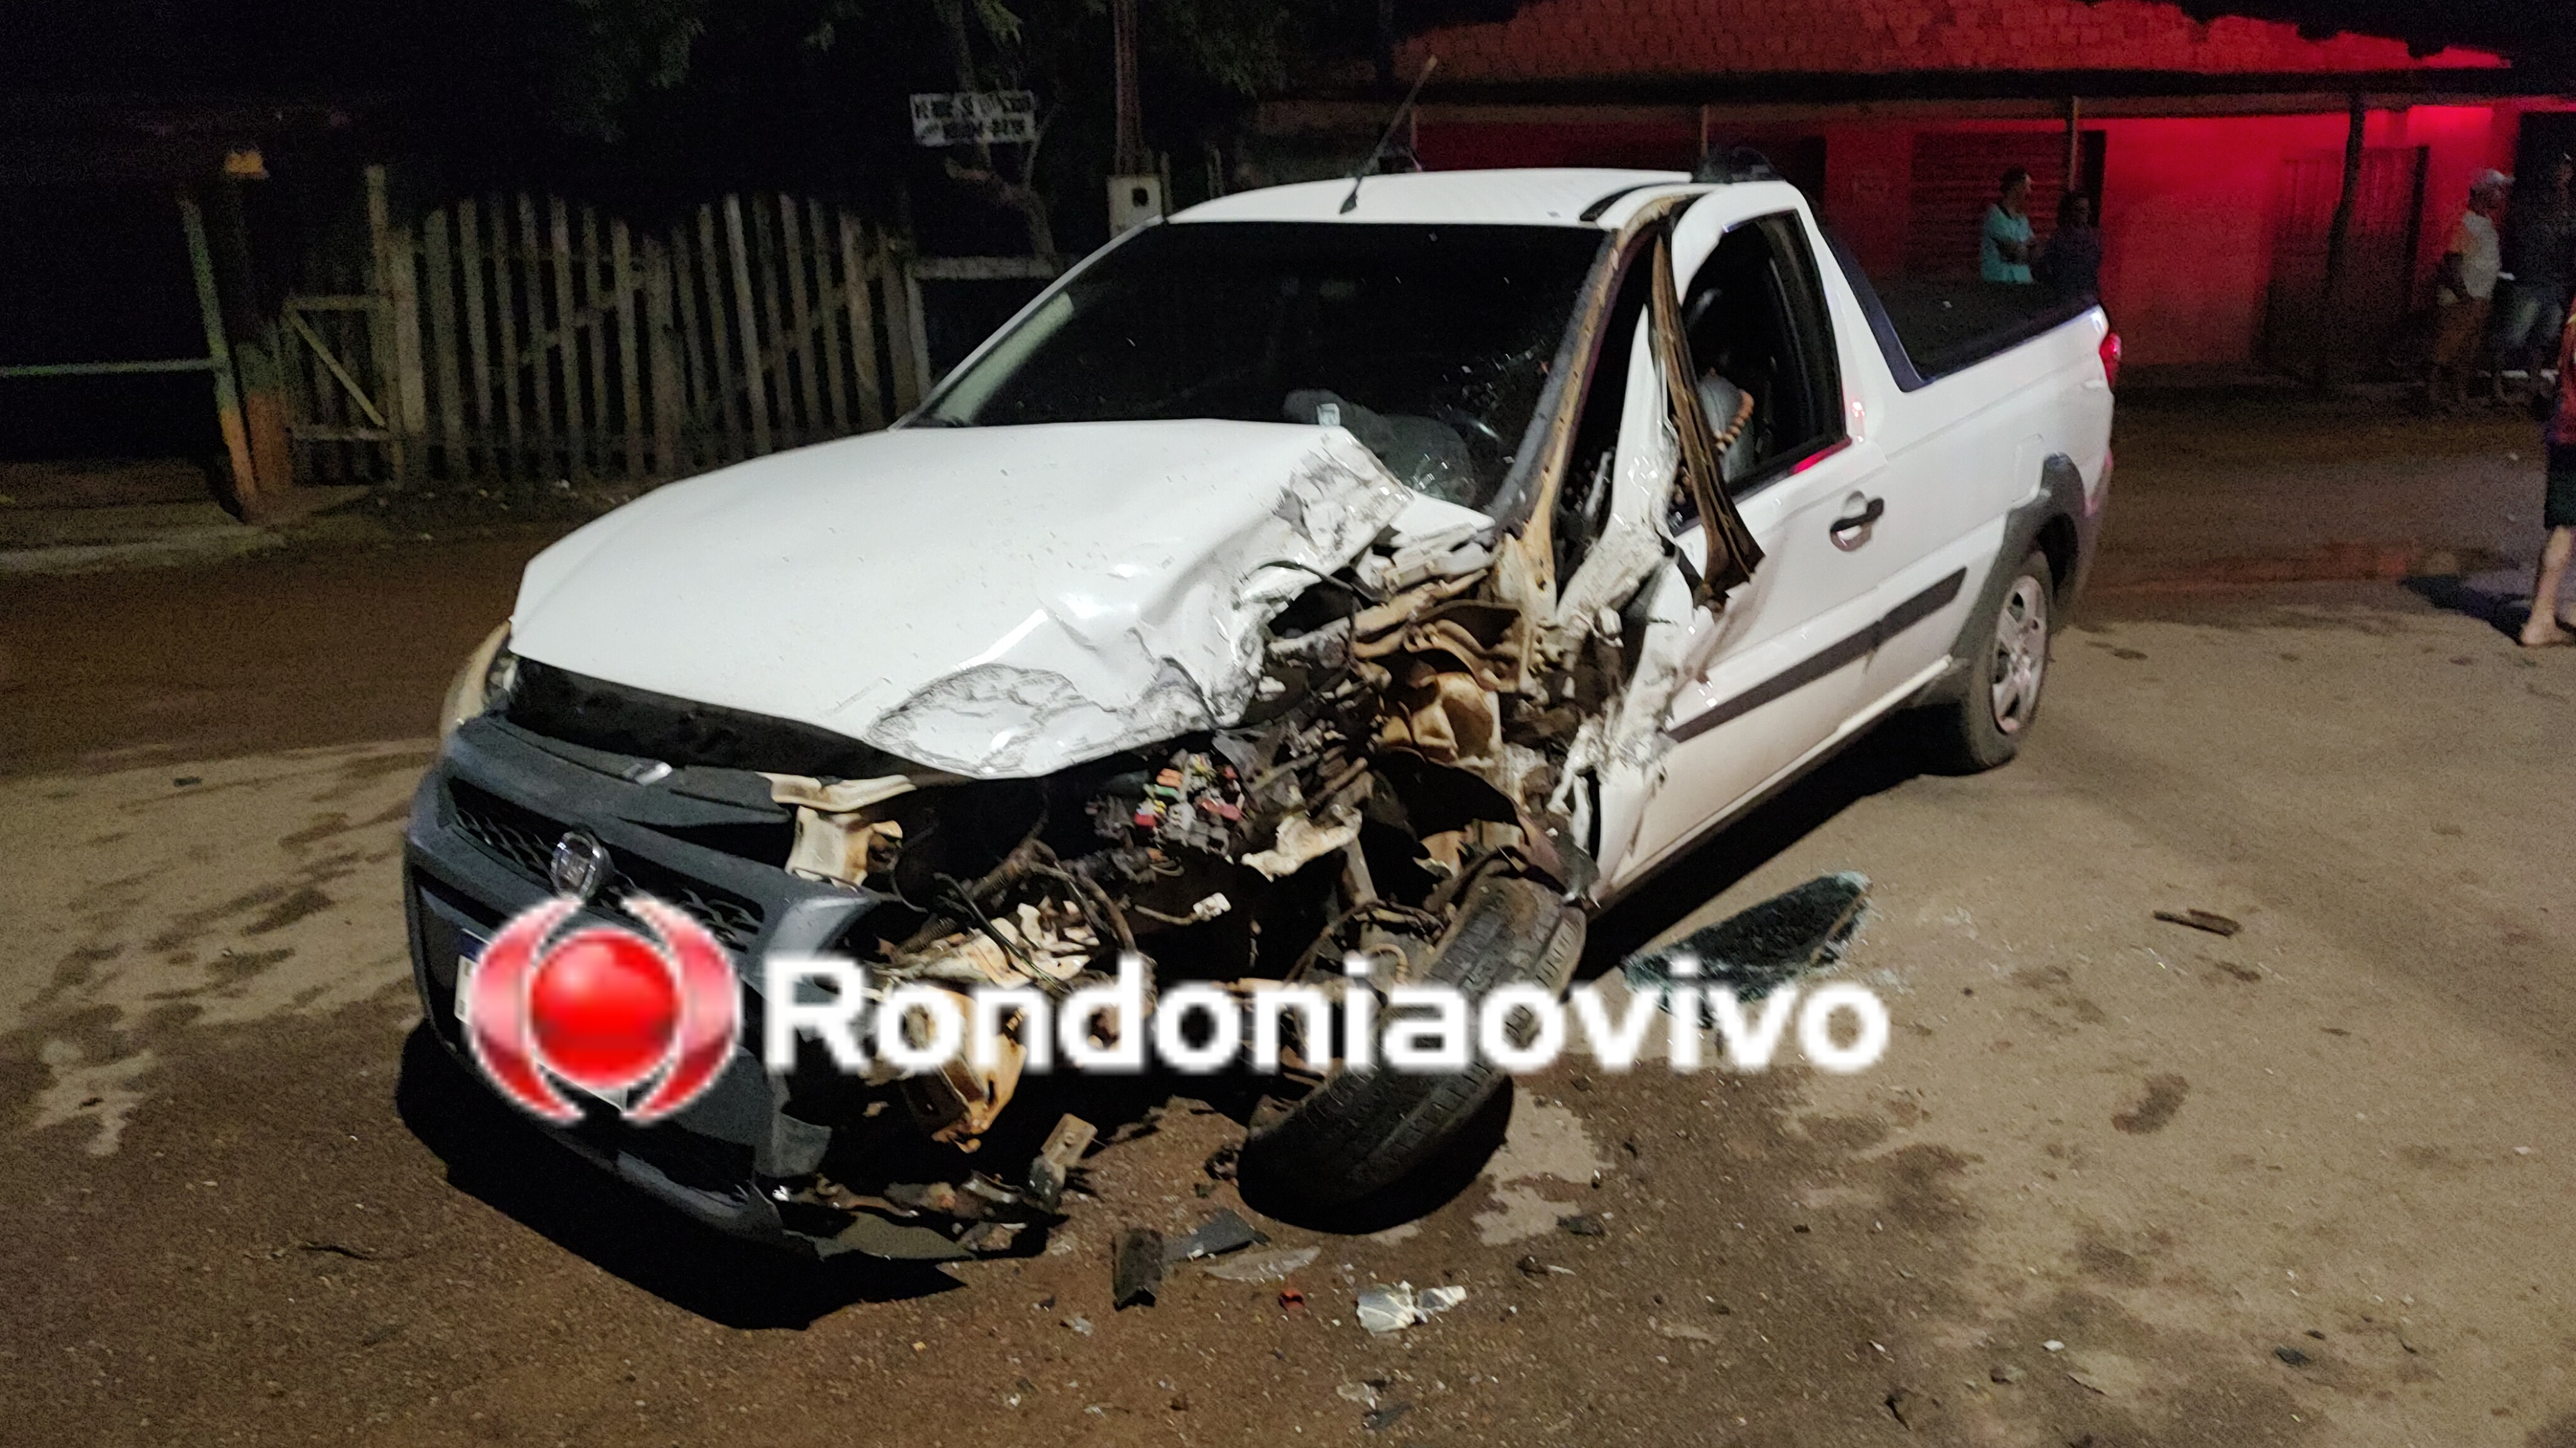 EMBRIAGUEZ: Motorista fica ferido em grave batida de carro com caminhão